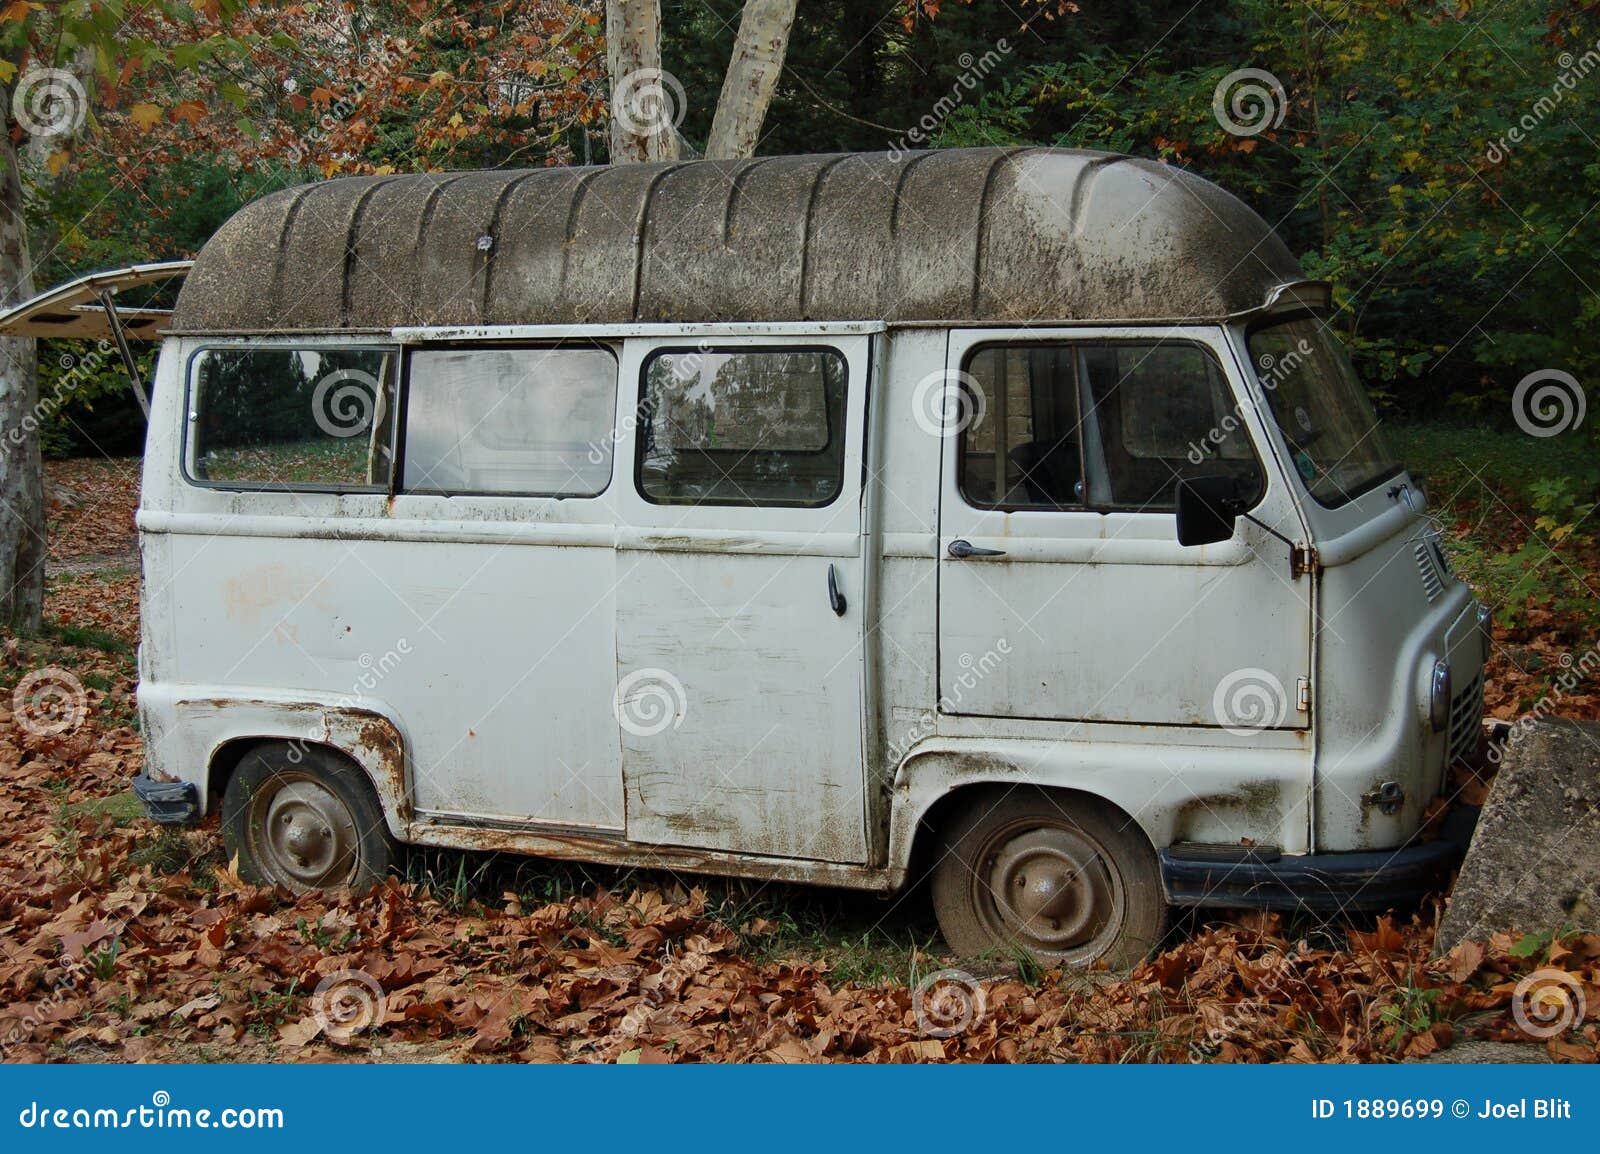 vintage mini van